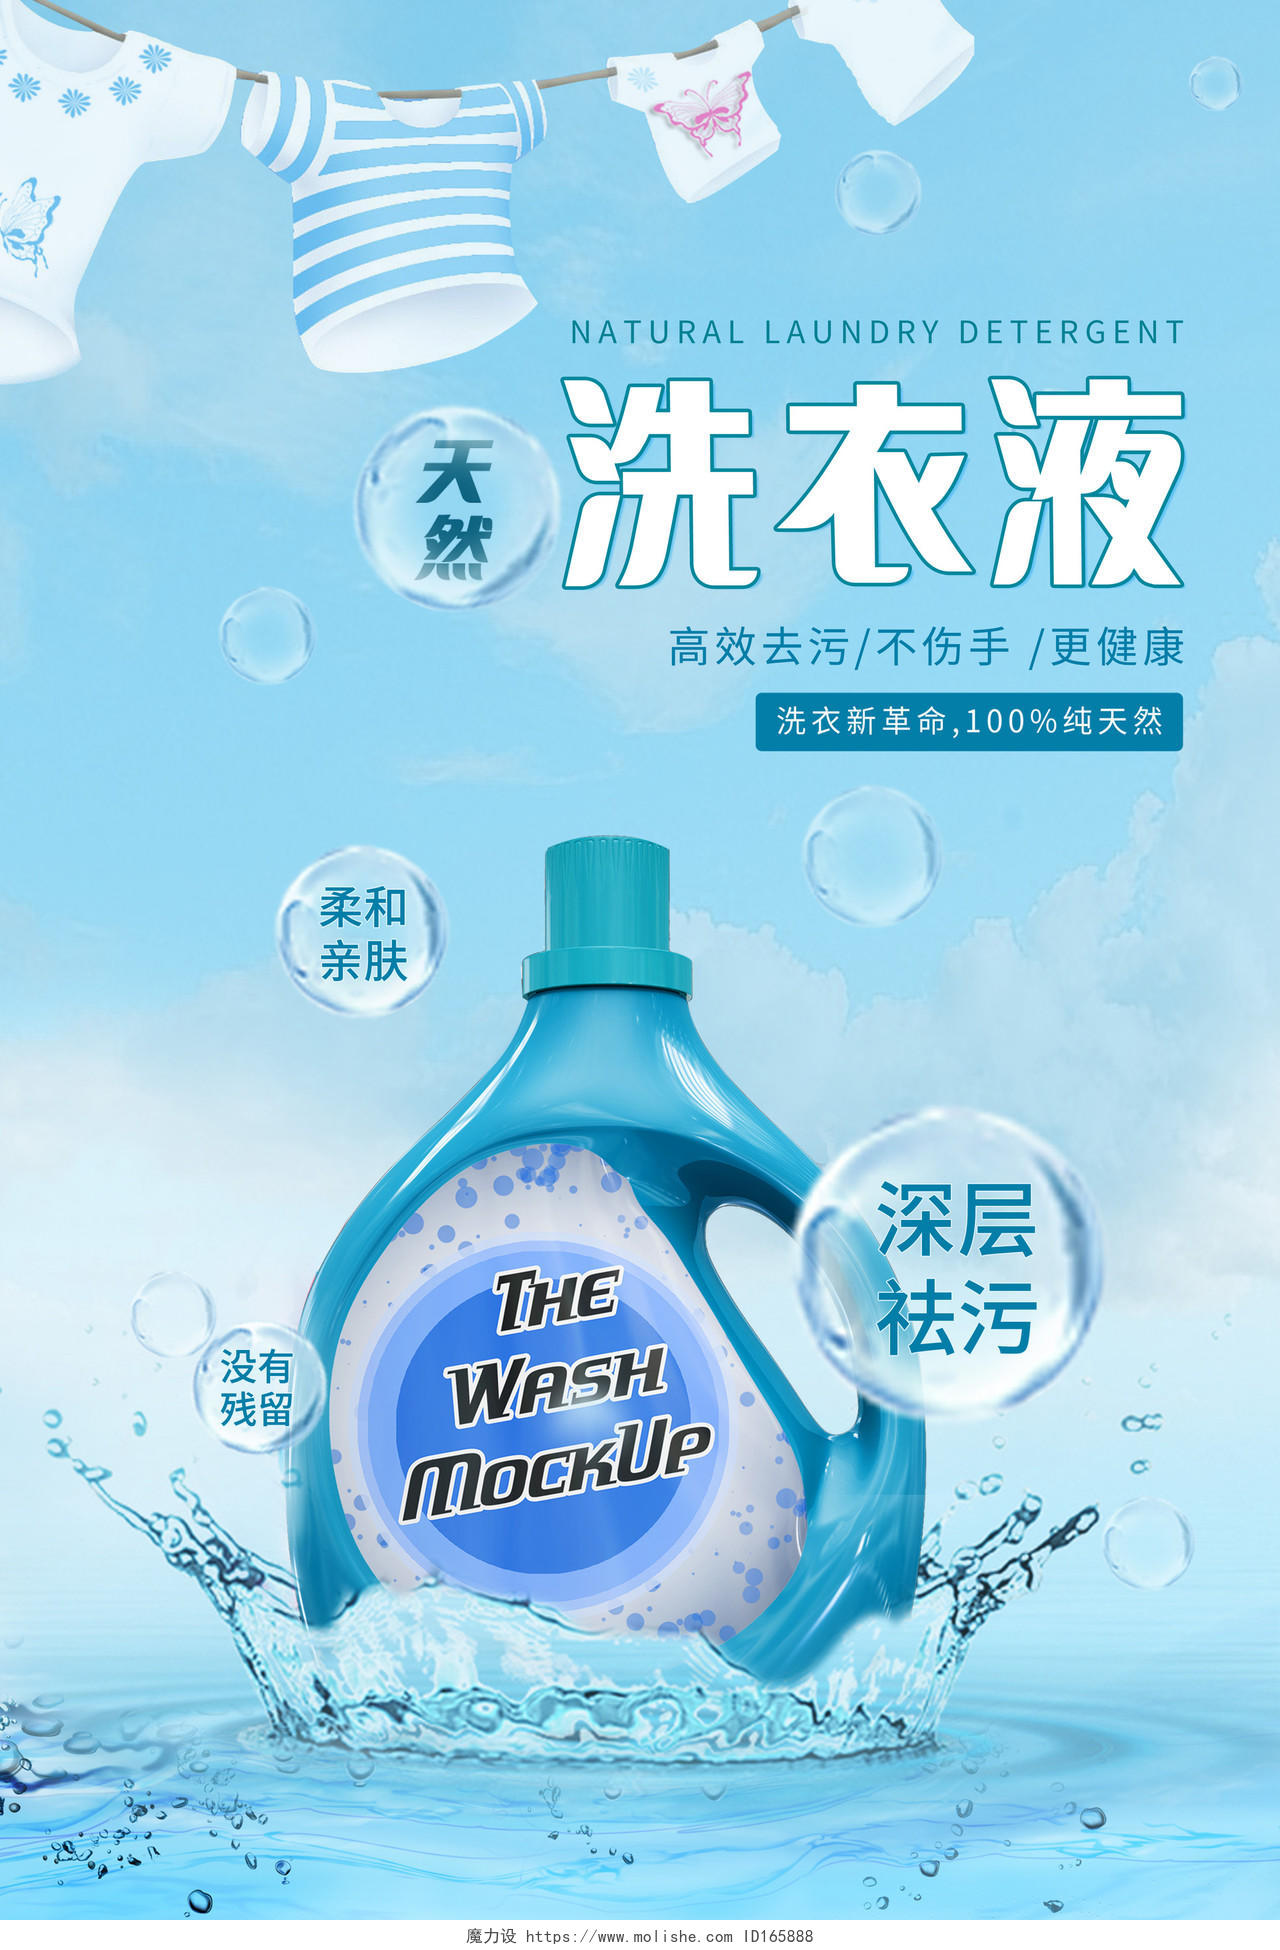 蓝色背景简约风格天然洗衣液产品介绍海报洗衣液海报